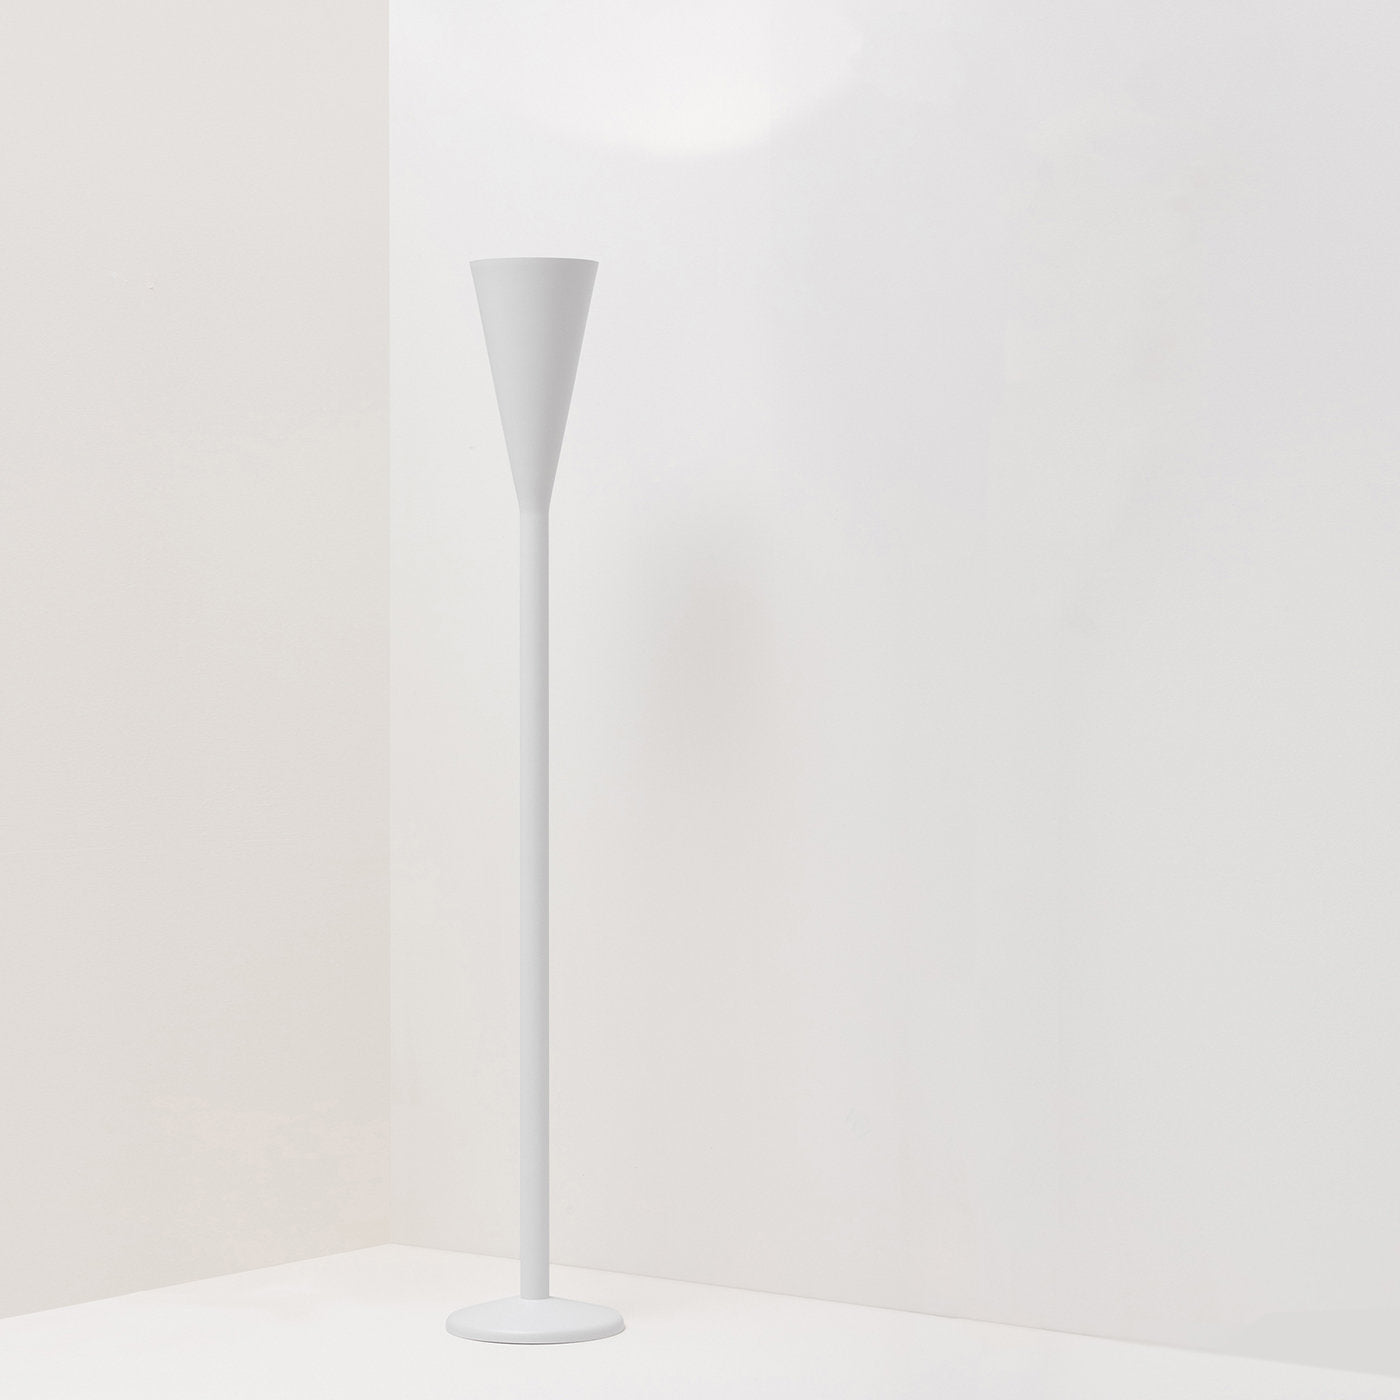 Illuminator White Floor Lamp by Pietro Chiesa - Alternative view 1